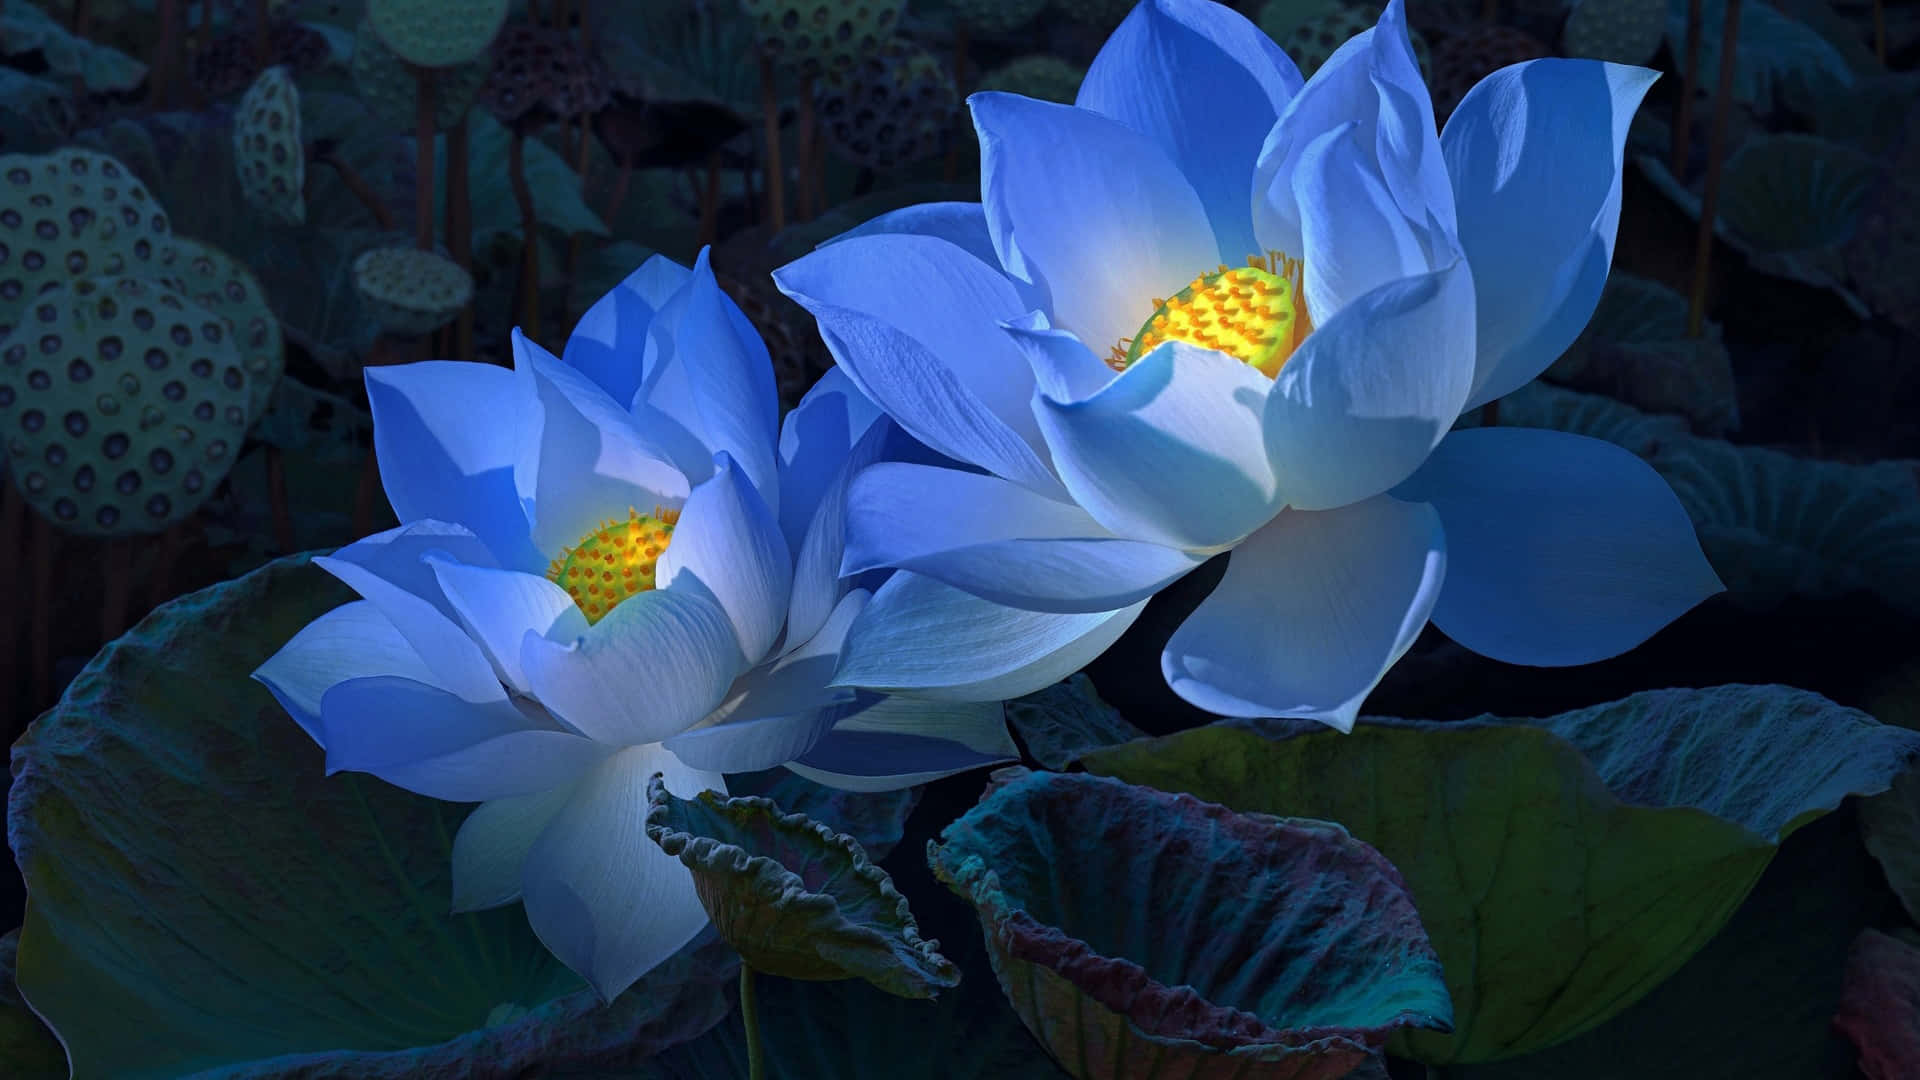 Serene Nighttime Lotus Blooms Wallpaper